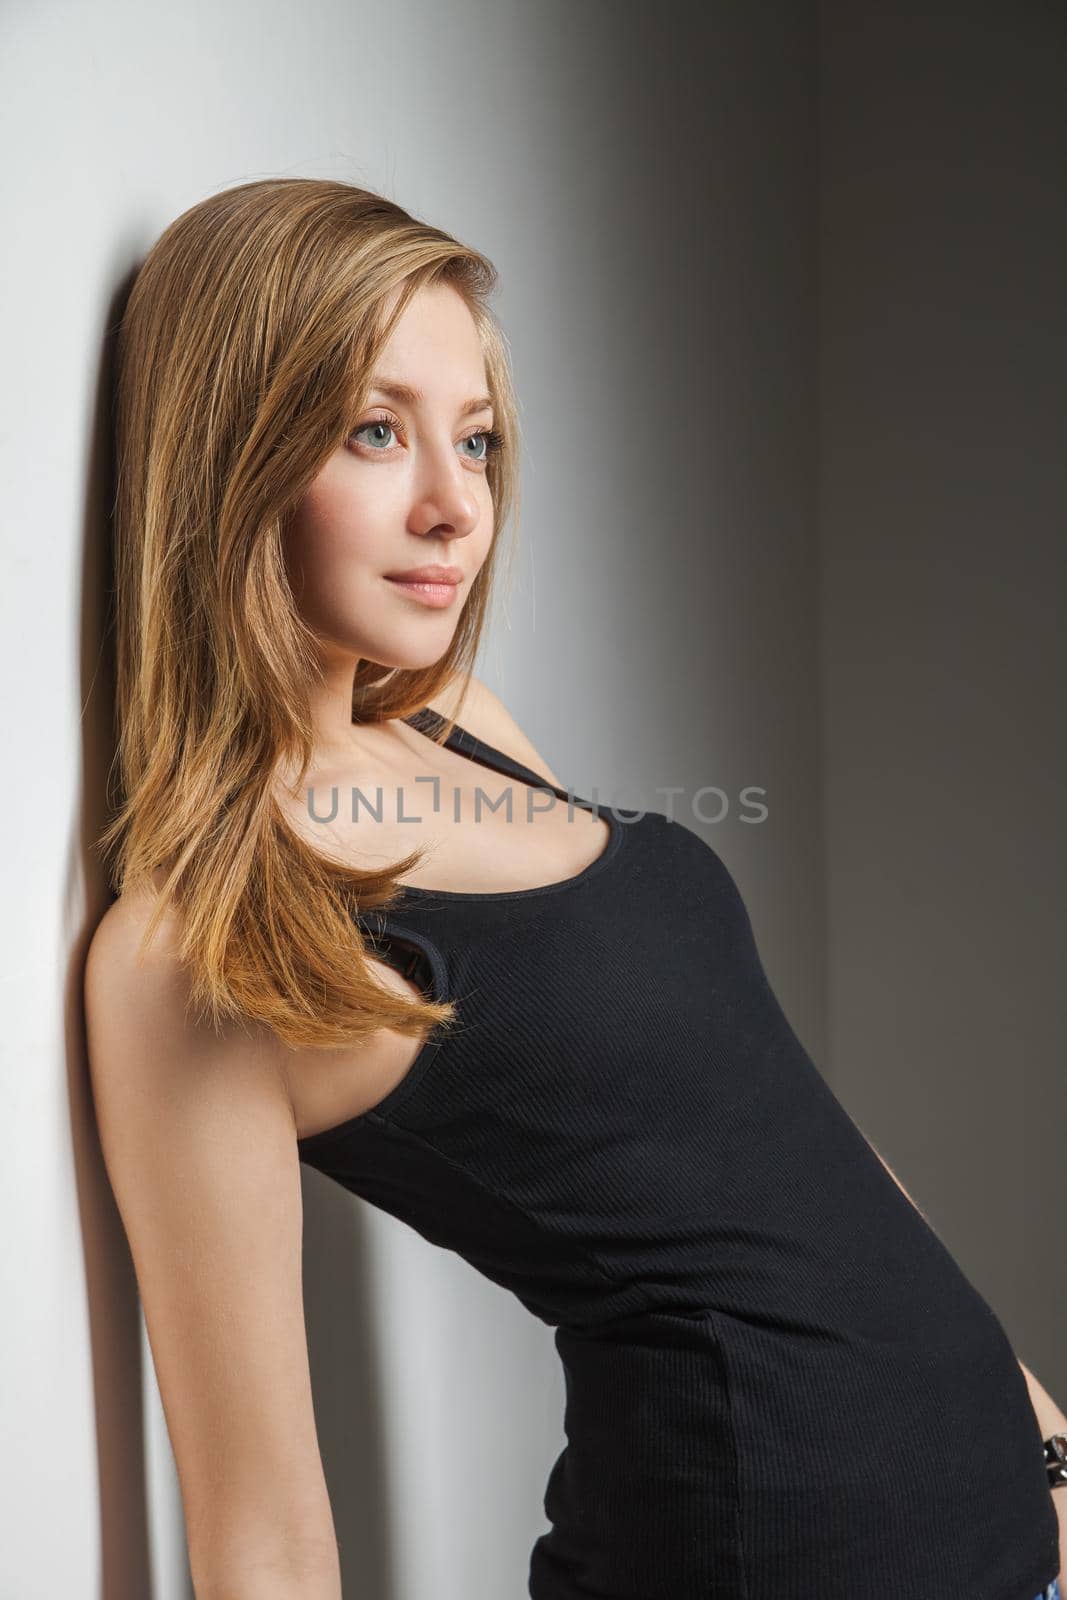 Beautiful young woman wearing black t-shirt by Julenochek